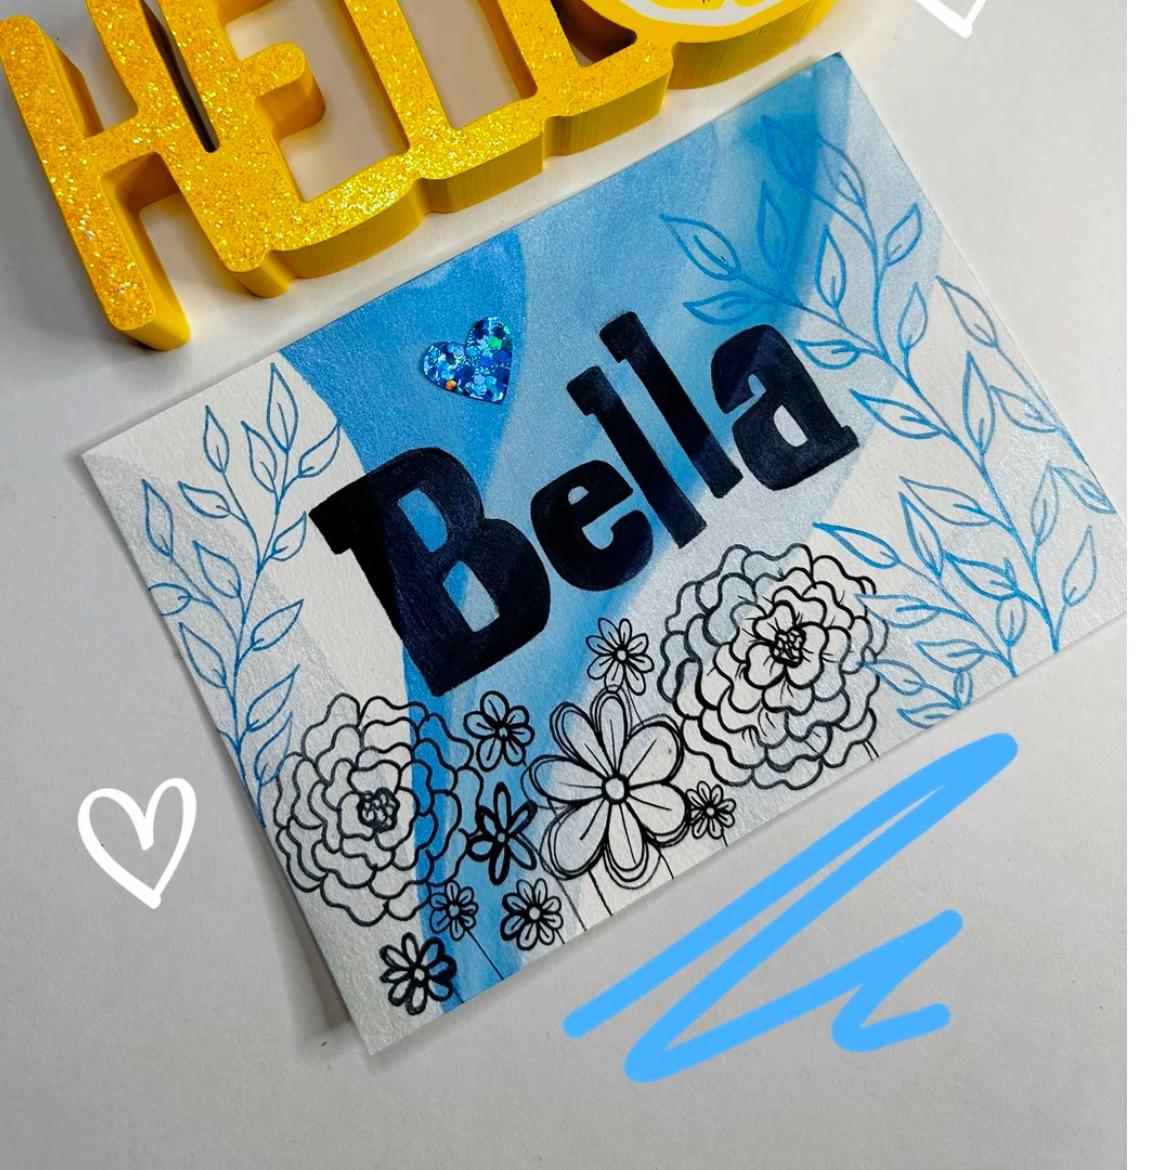 Bella 𓆉's images